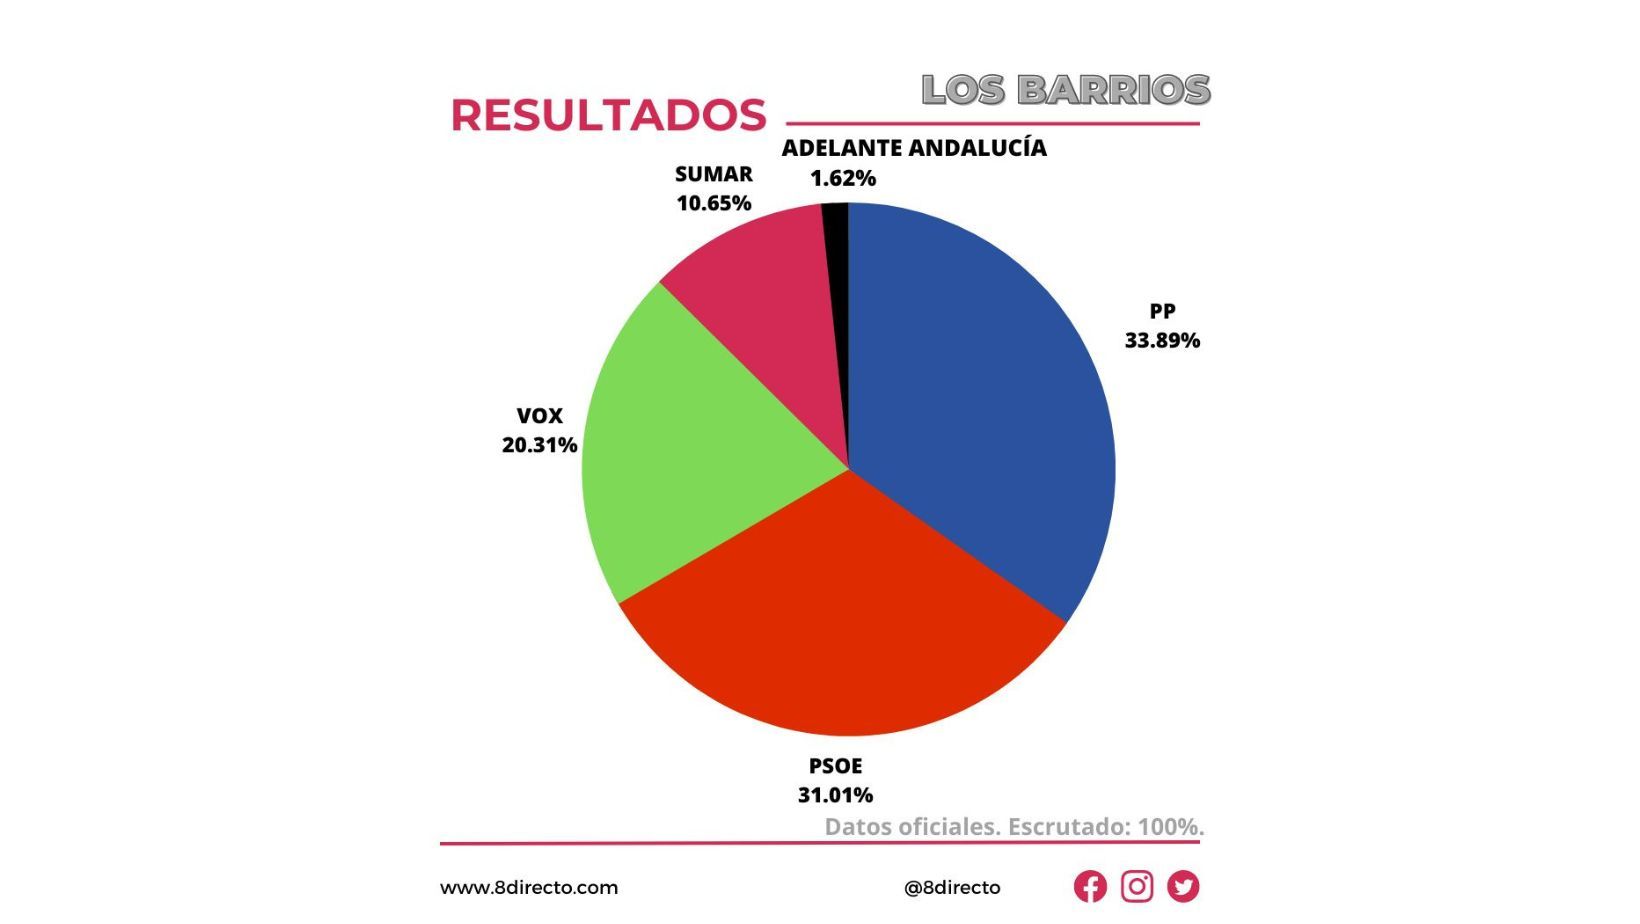 El Partido Popular se hace con la victoria en Los Barrios tras subir 19 puntos con respecto a 2019